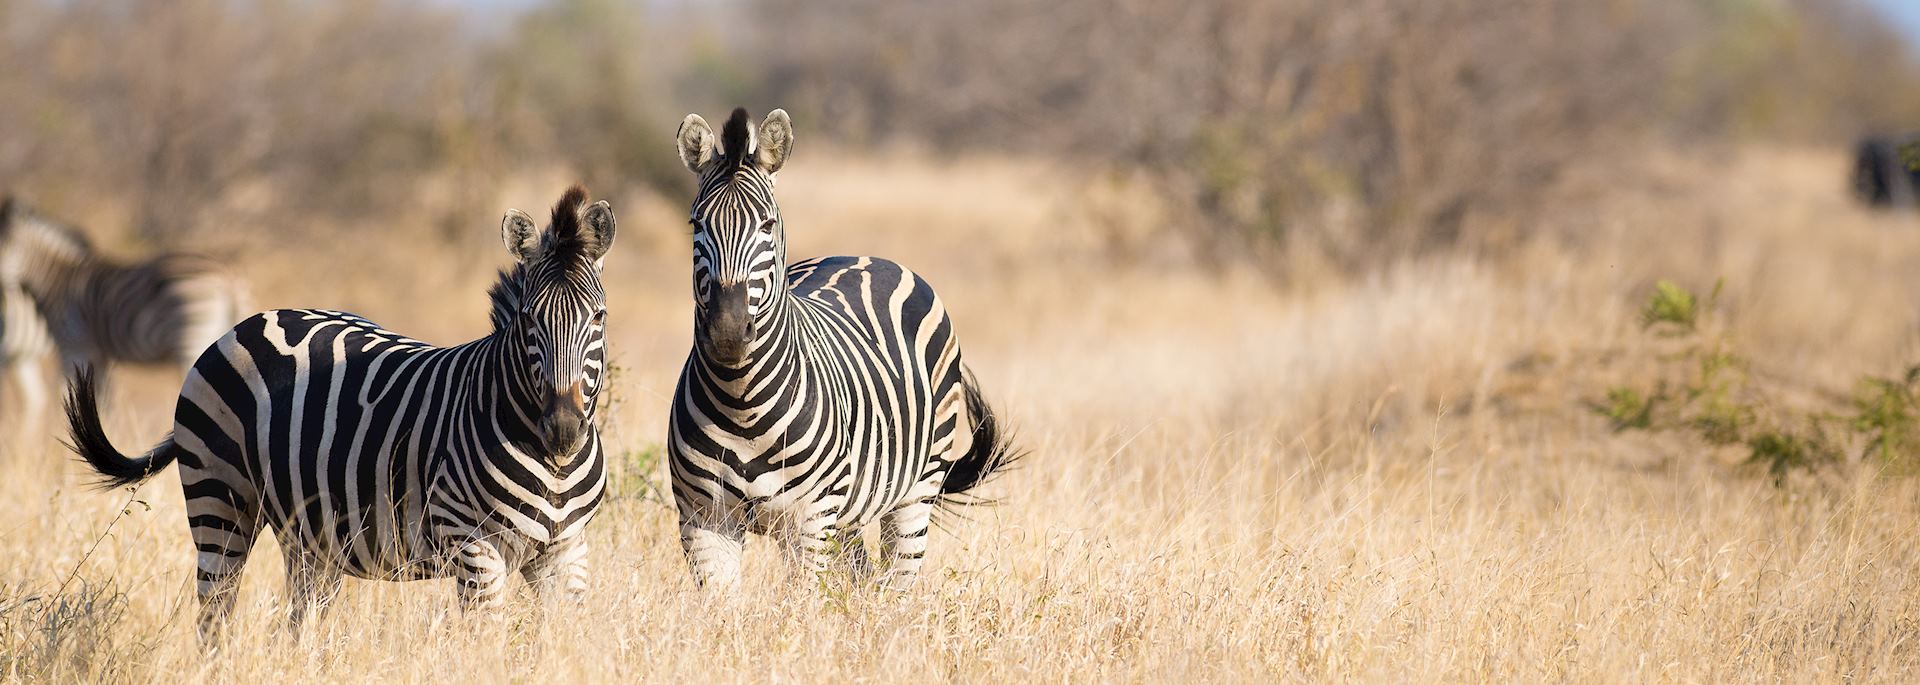 Zebra in Greater Kruger National Park